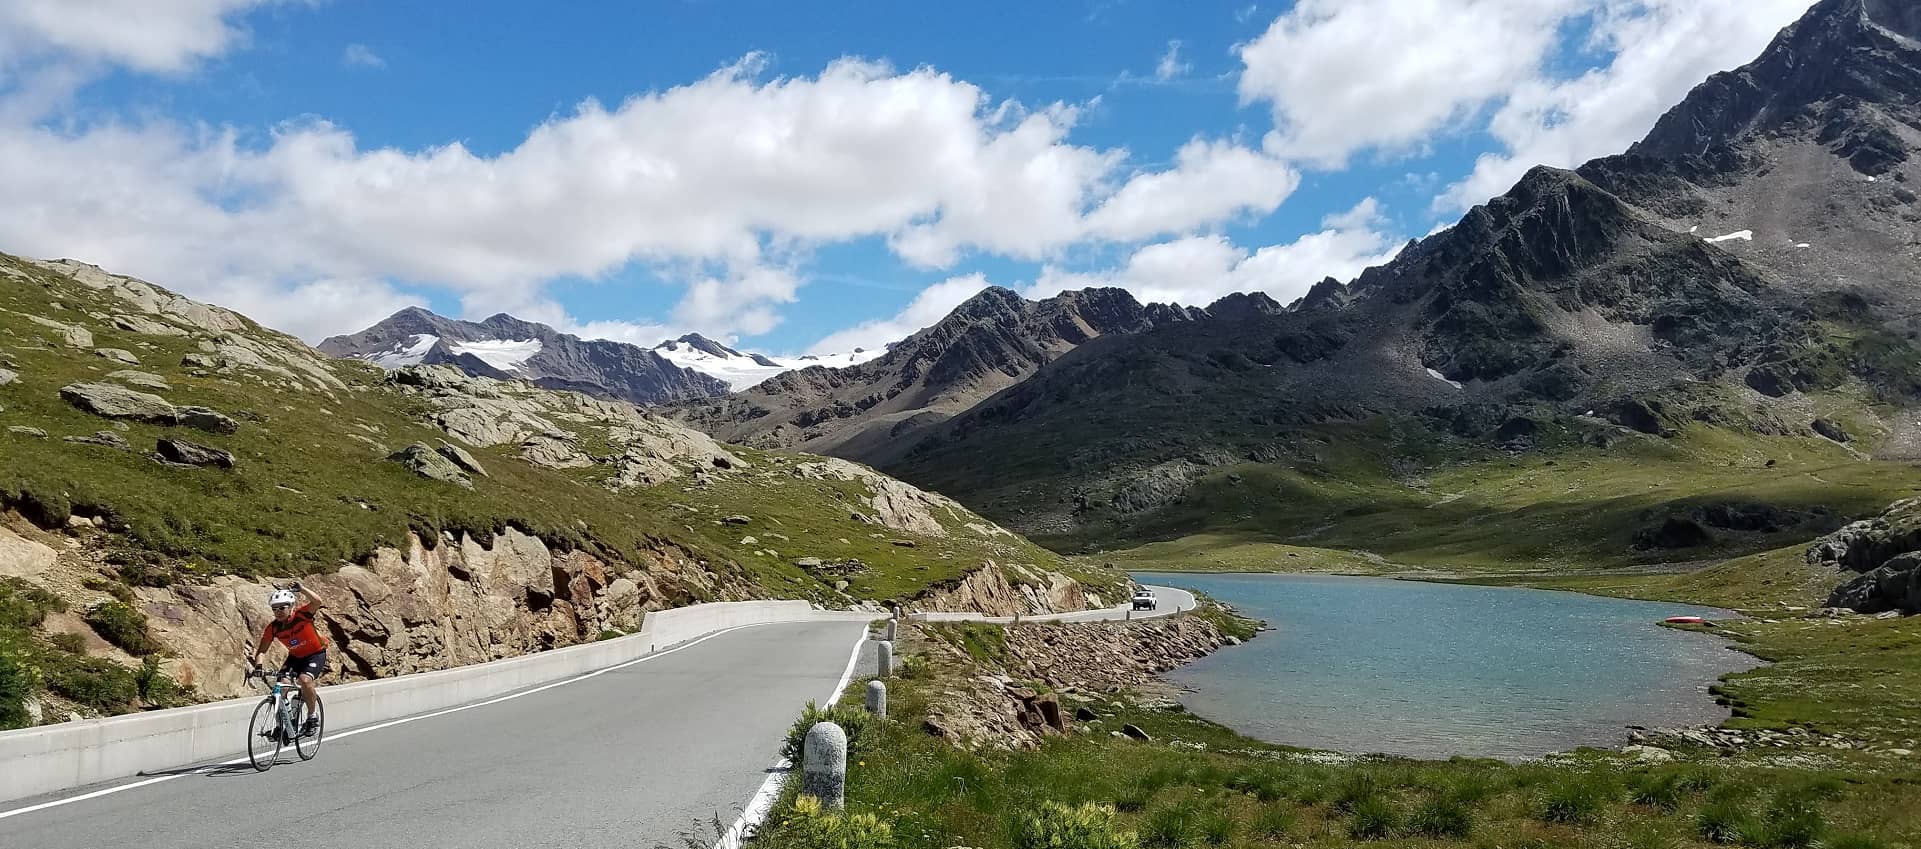 Dolomites & Italian Alps Cycling Holiday